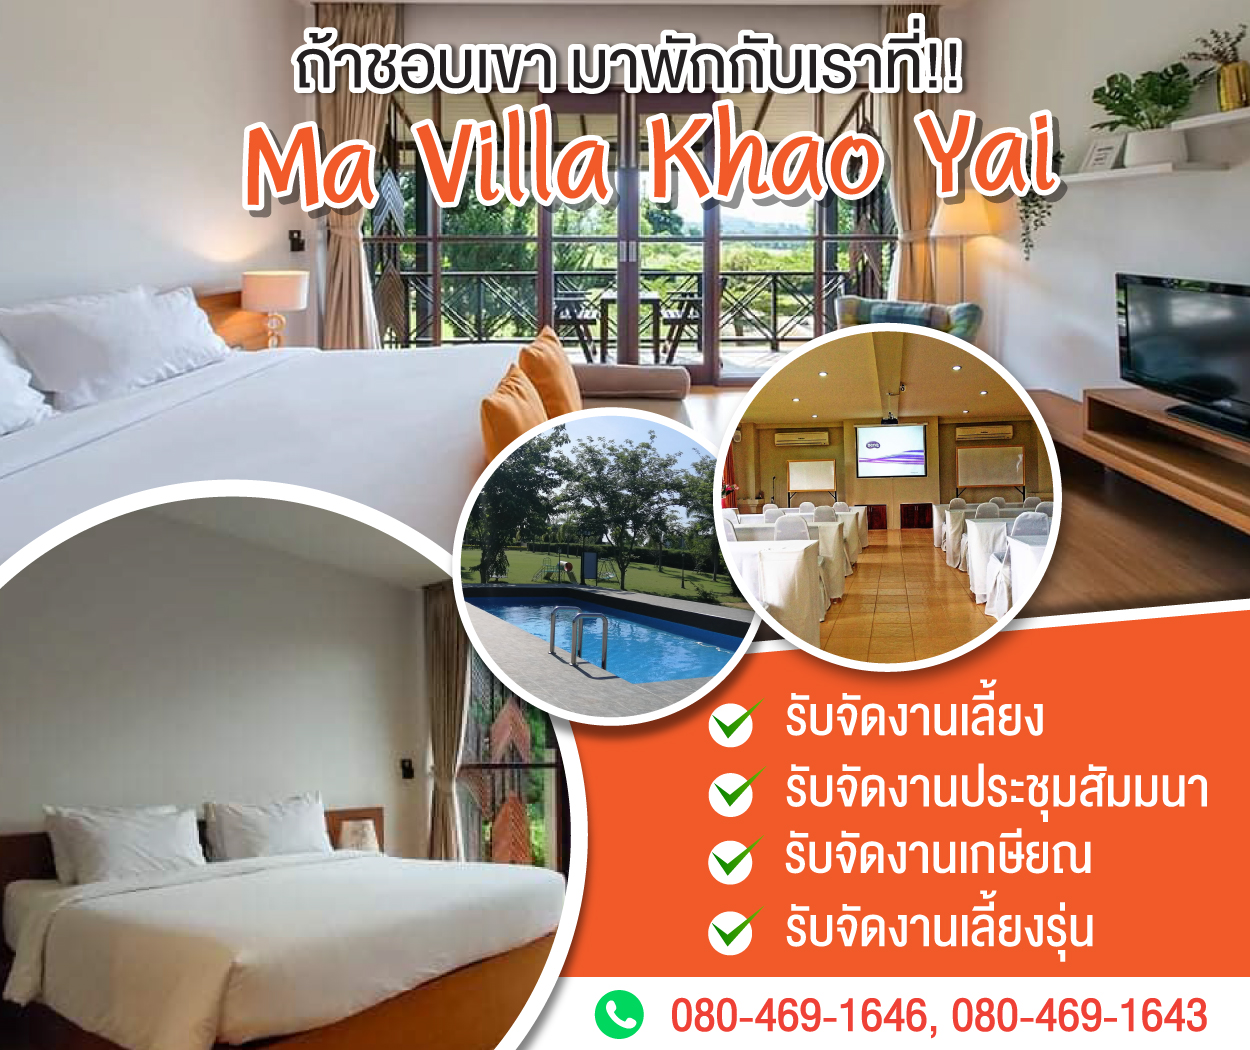 Ma Villa Khao Yai